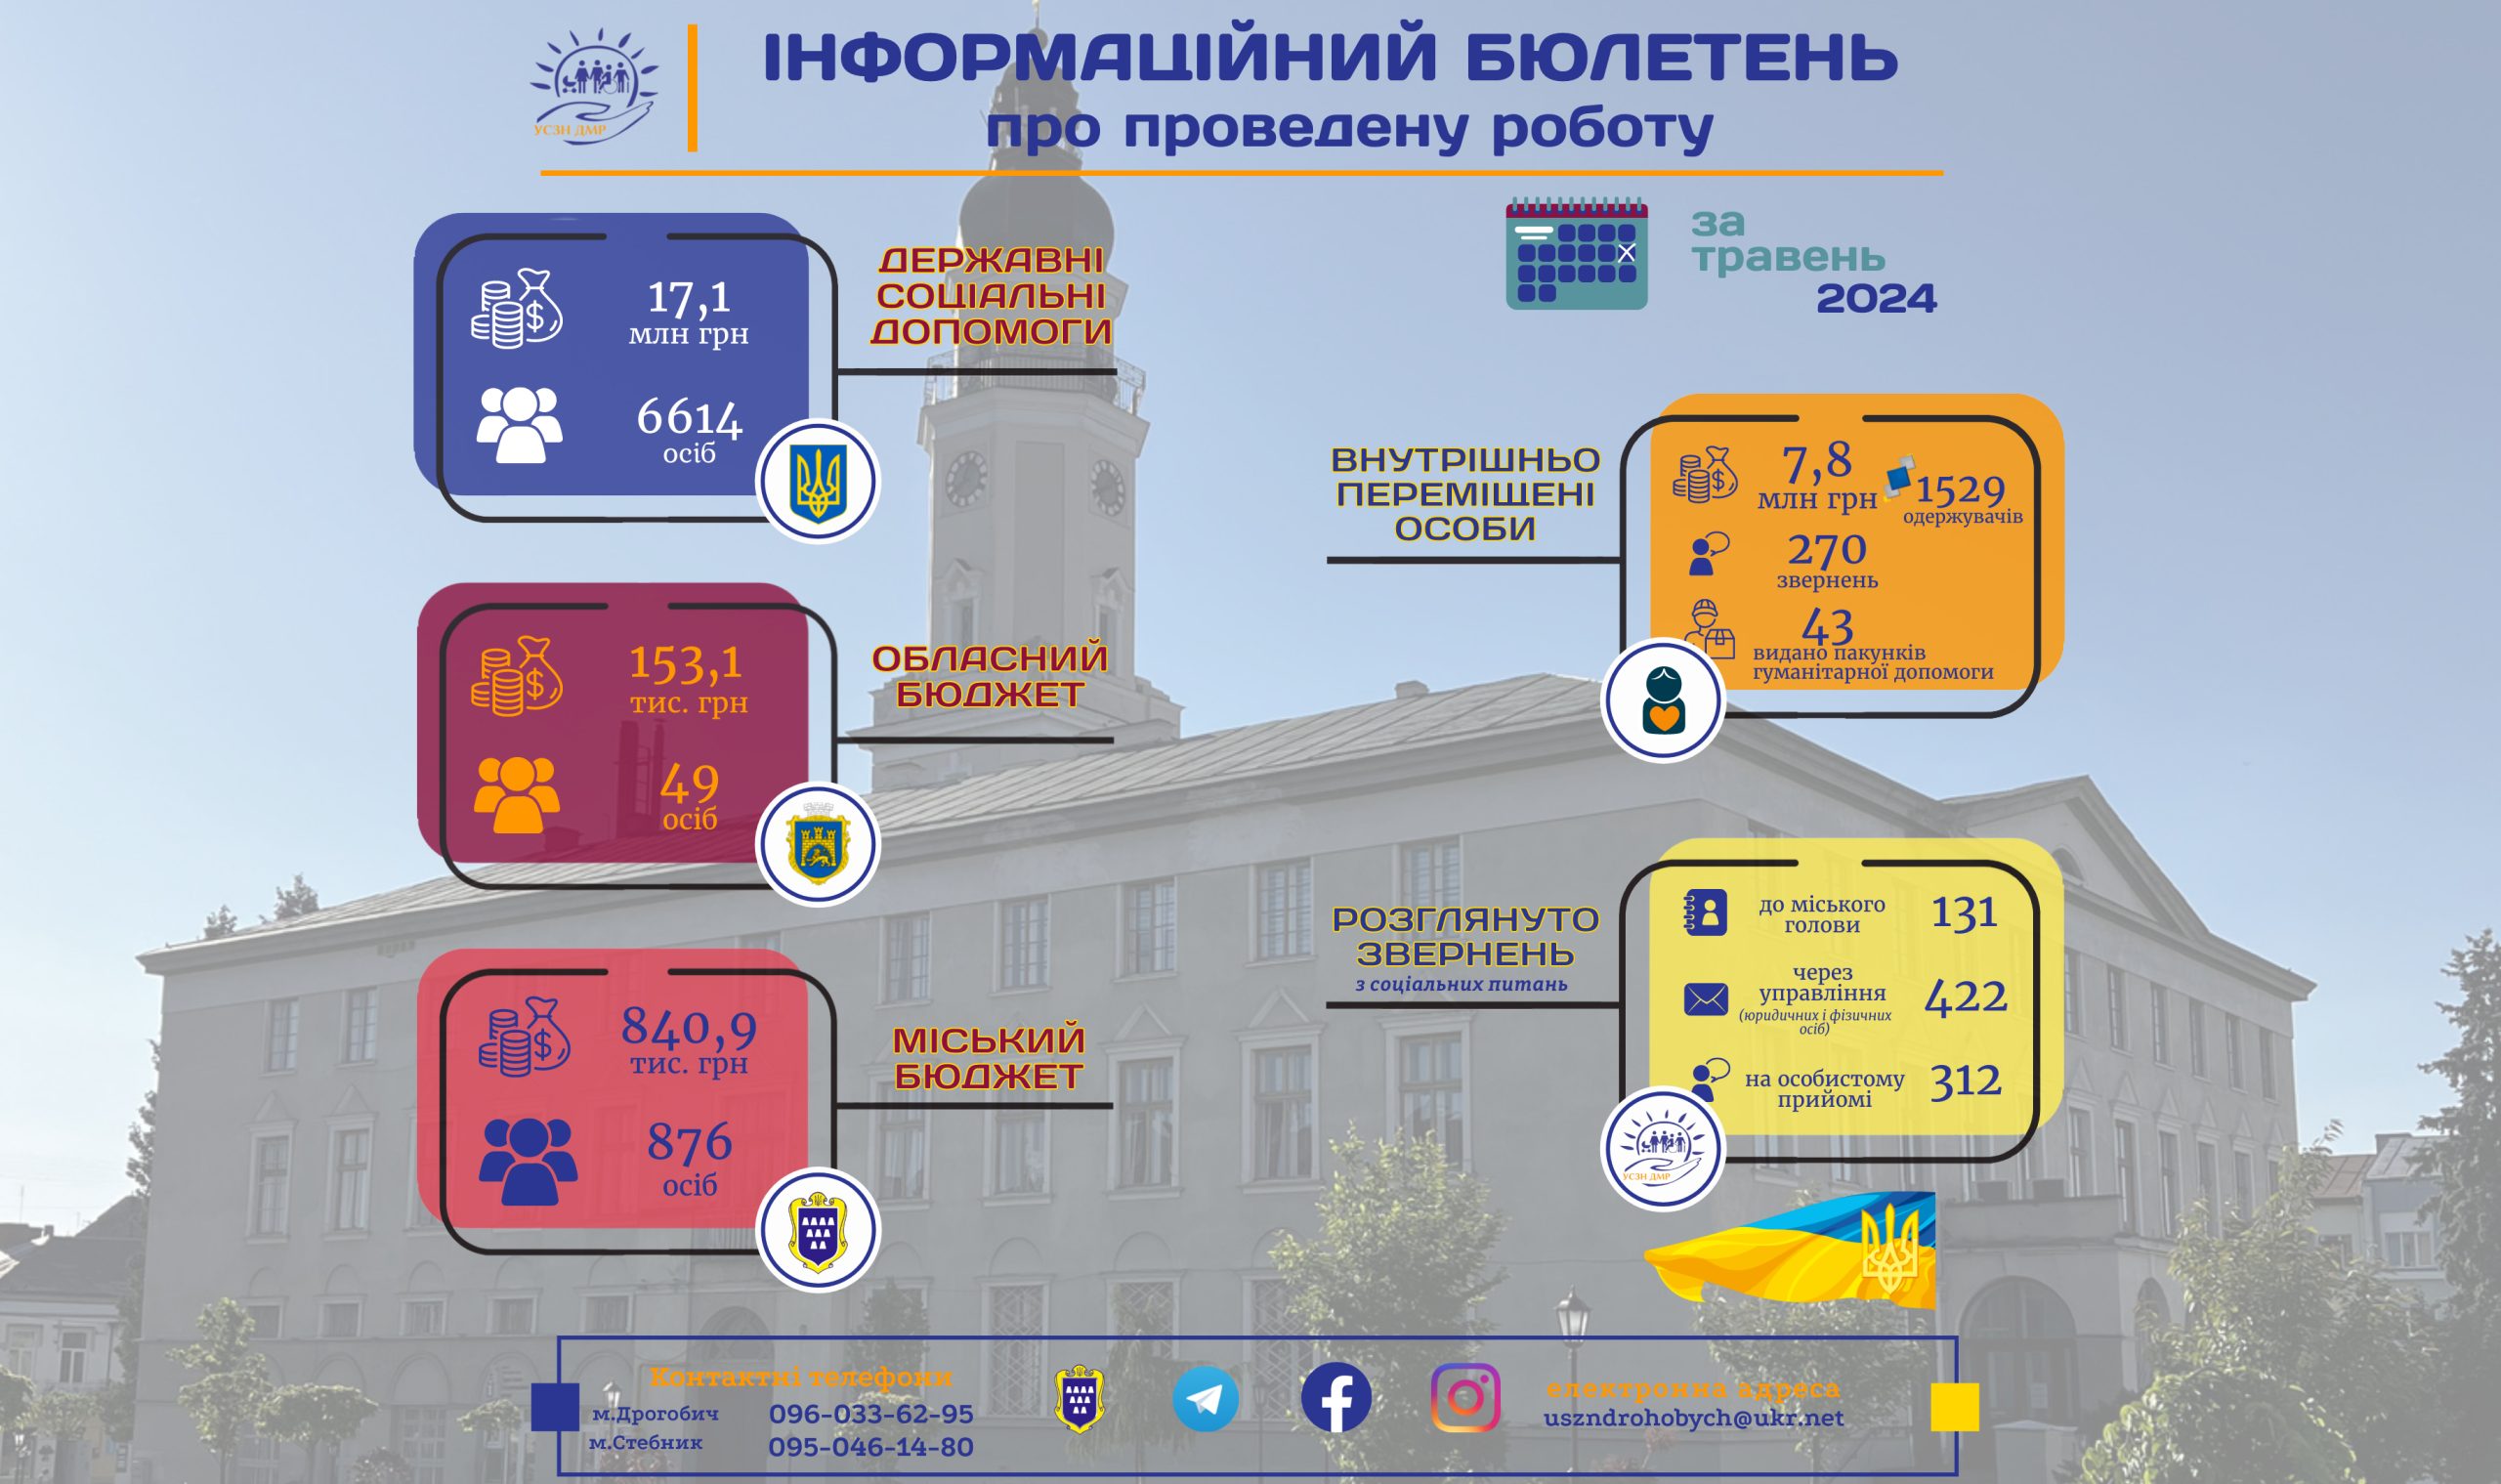 Інформаційний бюлетень про проведену роботу управління соціального захисту населення Дрогобицької міської ради за травень